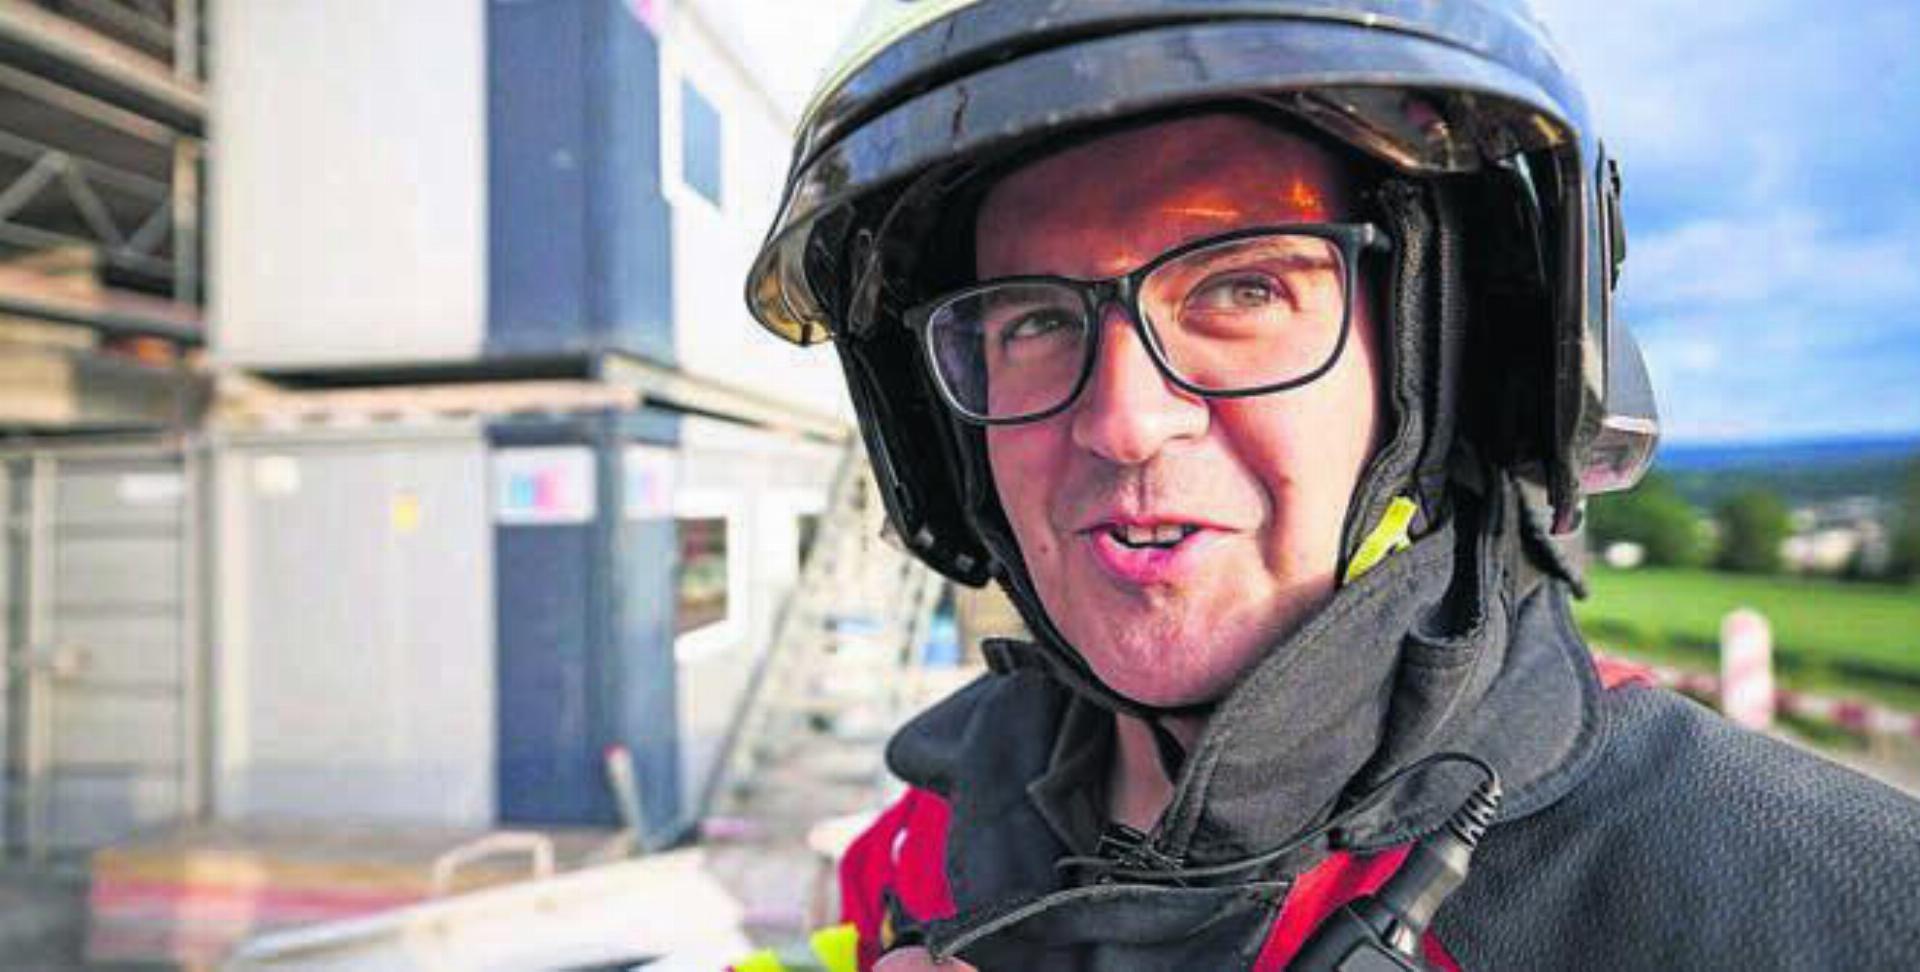 Marcel Hottingers persönliches Jahreshighlight ist die Feuerwehrhauptübung. Bild: zg